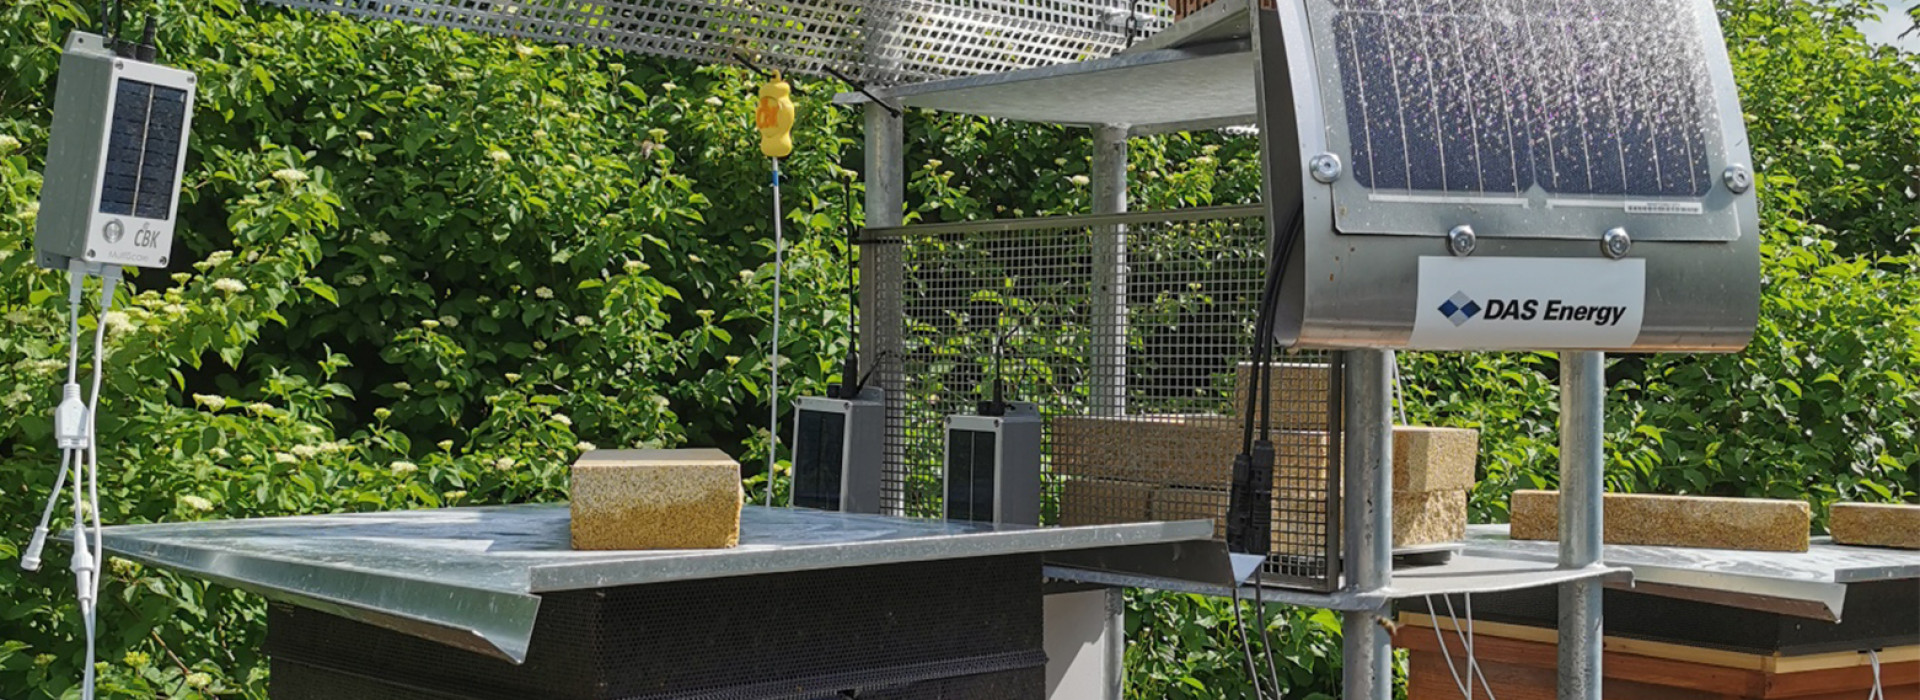 DAS Energy Solarmodule für „Bienenkachelöfen“